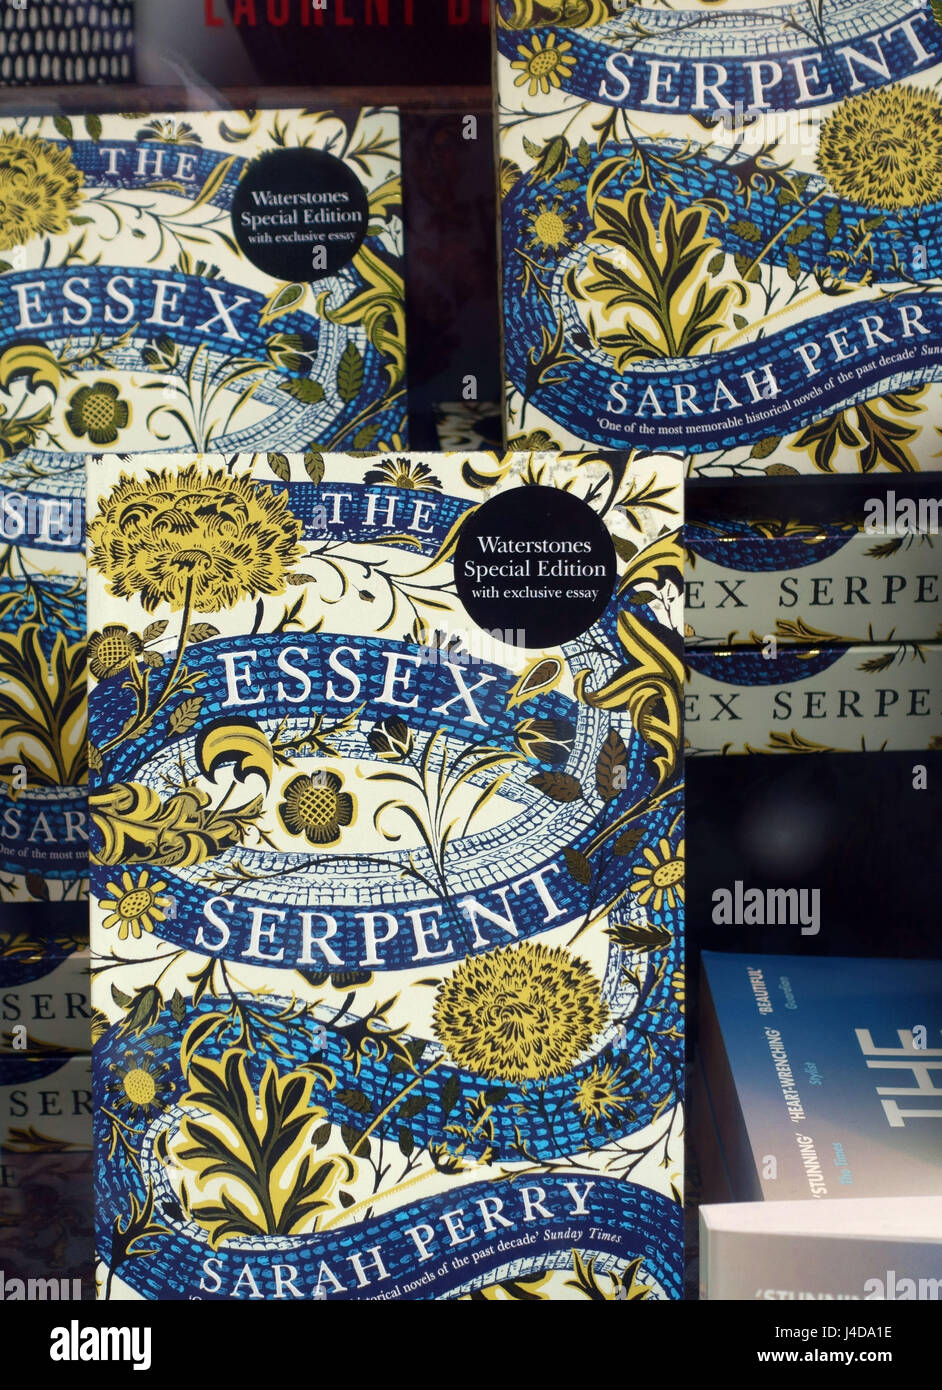 Il Serpente di Essex, best seller di Sarah Perry, a Londra finestra bookshop Foto Stock